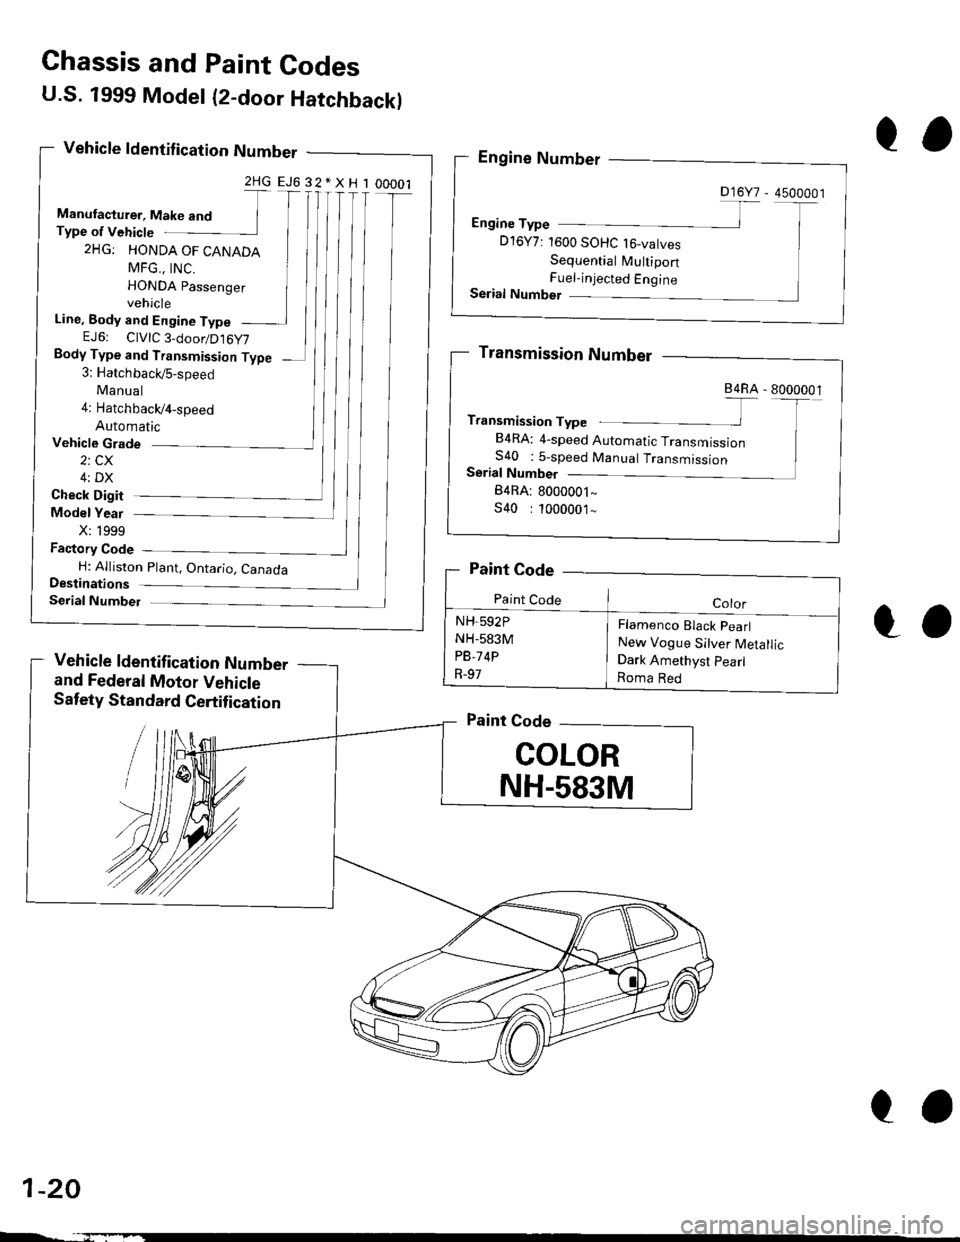 HONDA CIVIC 2000 6.G User Guide U.S. 1999 Model (2-door Hatchbackl
Vehicle ldentif ication Number
2HGEJ632*XH100001
Manufacturer, Make and TType of Vehicte
2HG: HONDA OF CANADA
MFG.. tNC. IHONDA passenger Ivehicle
Line, Body and Eng